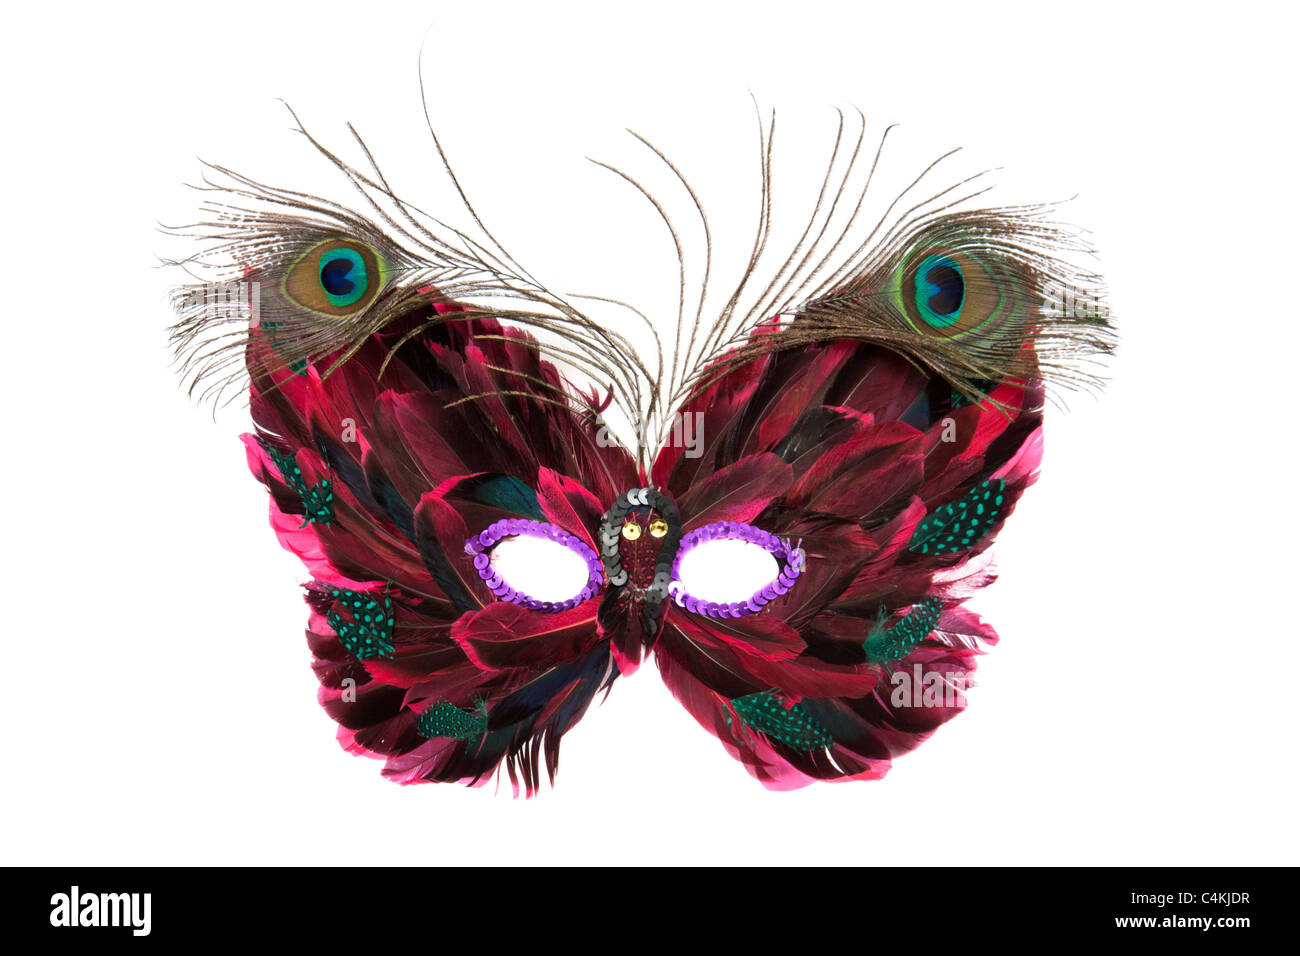 Bola ornamentado veneciano ojo máscara con plumas de pavo real Foto de stock